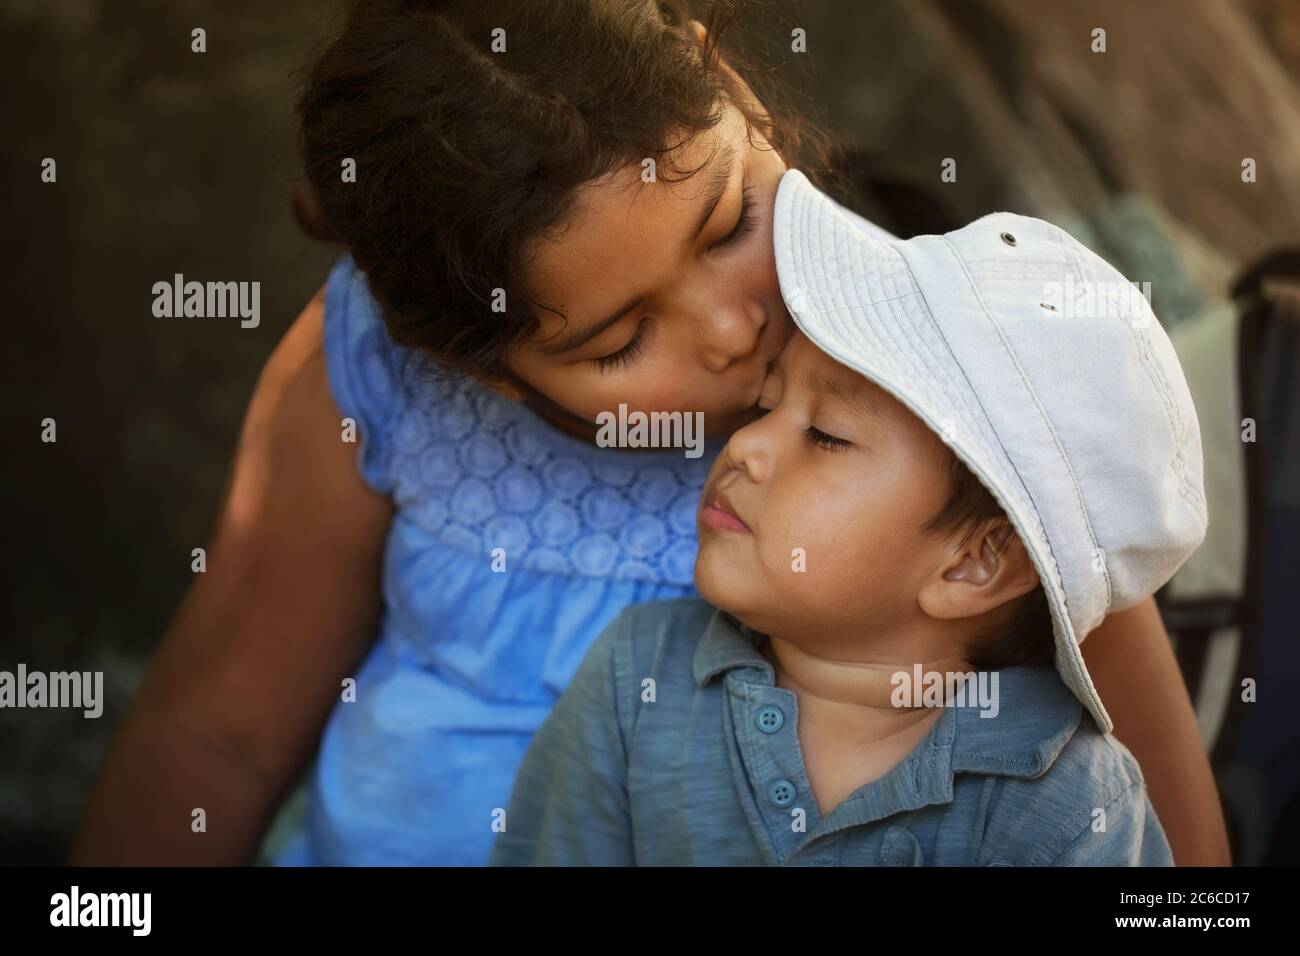 La hermana mayor conforta a su hermano pequeño después de hacerse daño al aire libre, dándole un beso en la frente. Foto de stock